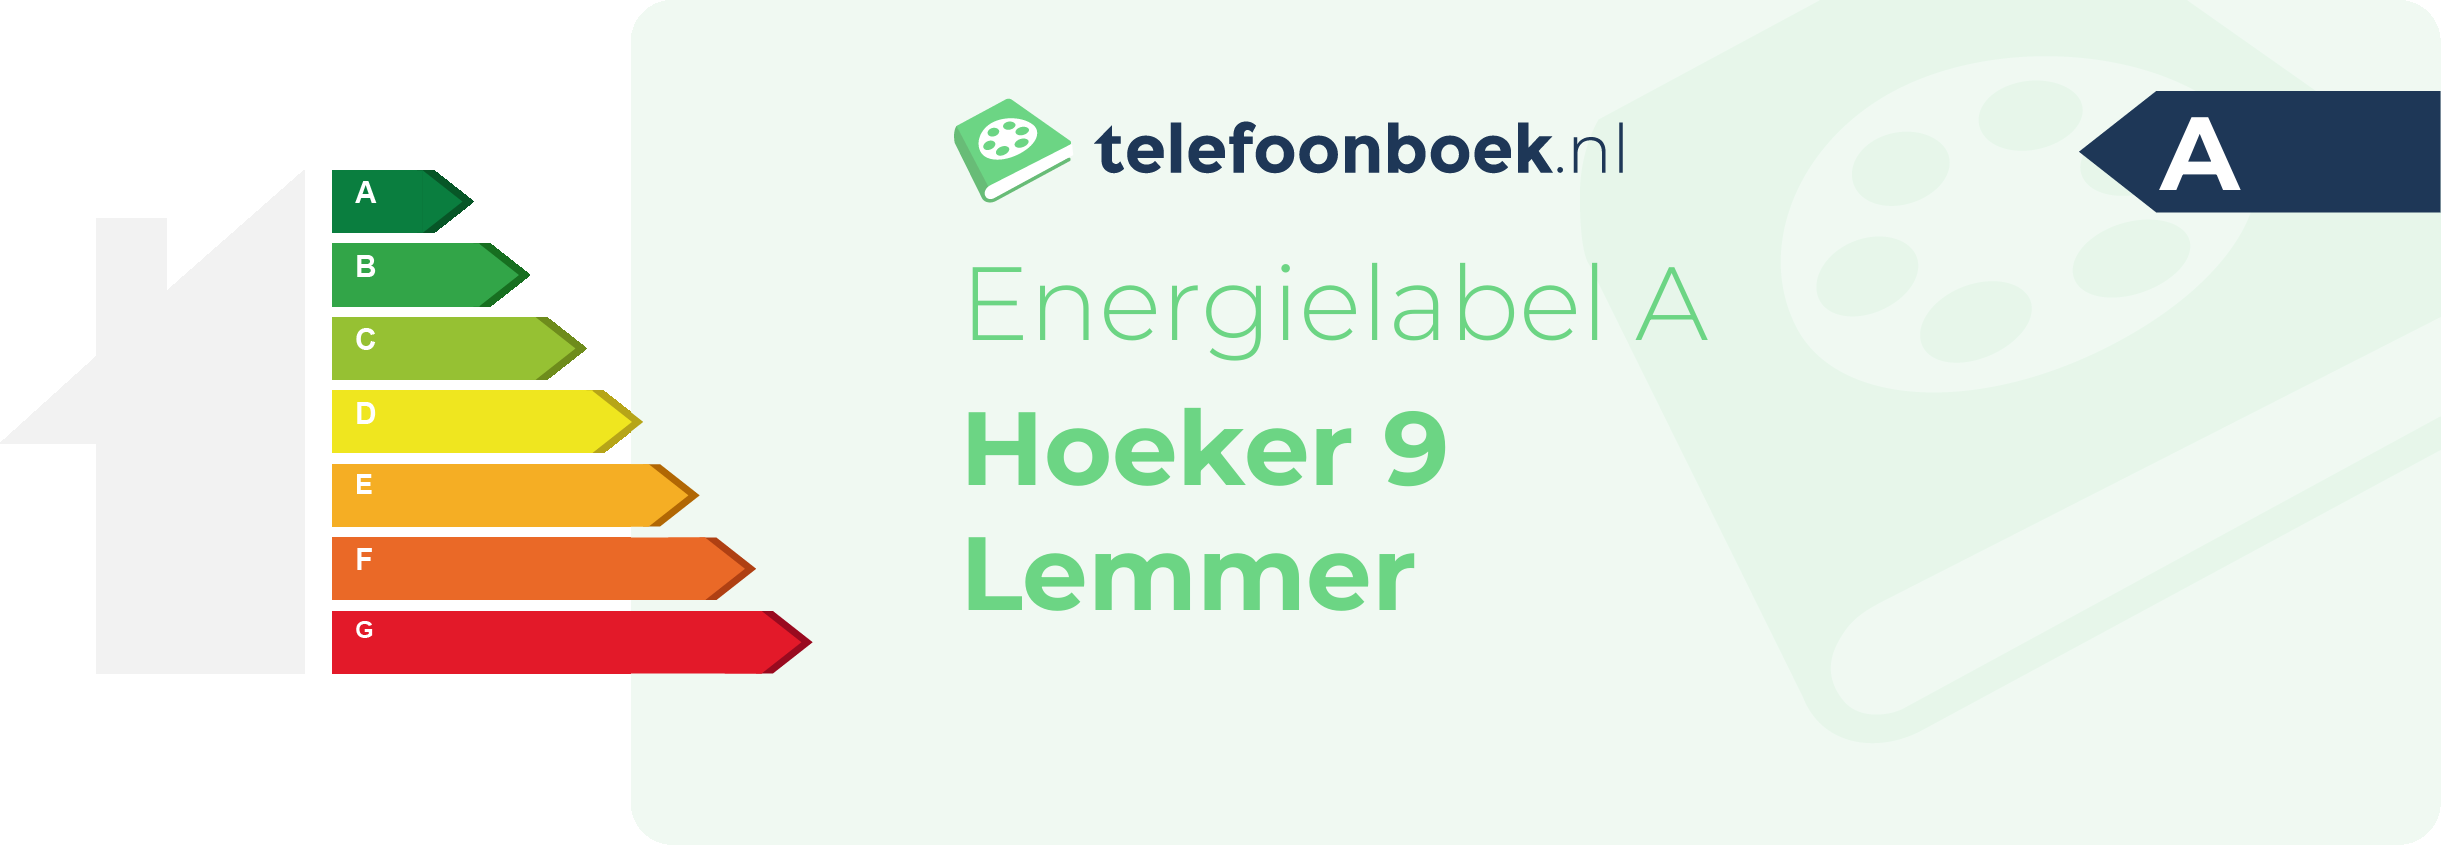 Energielabel Hoeker 9 Lemmer